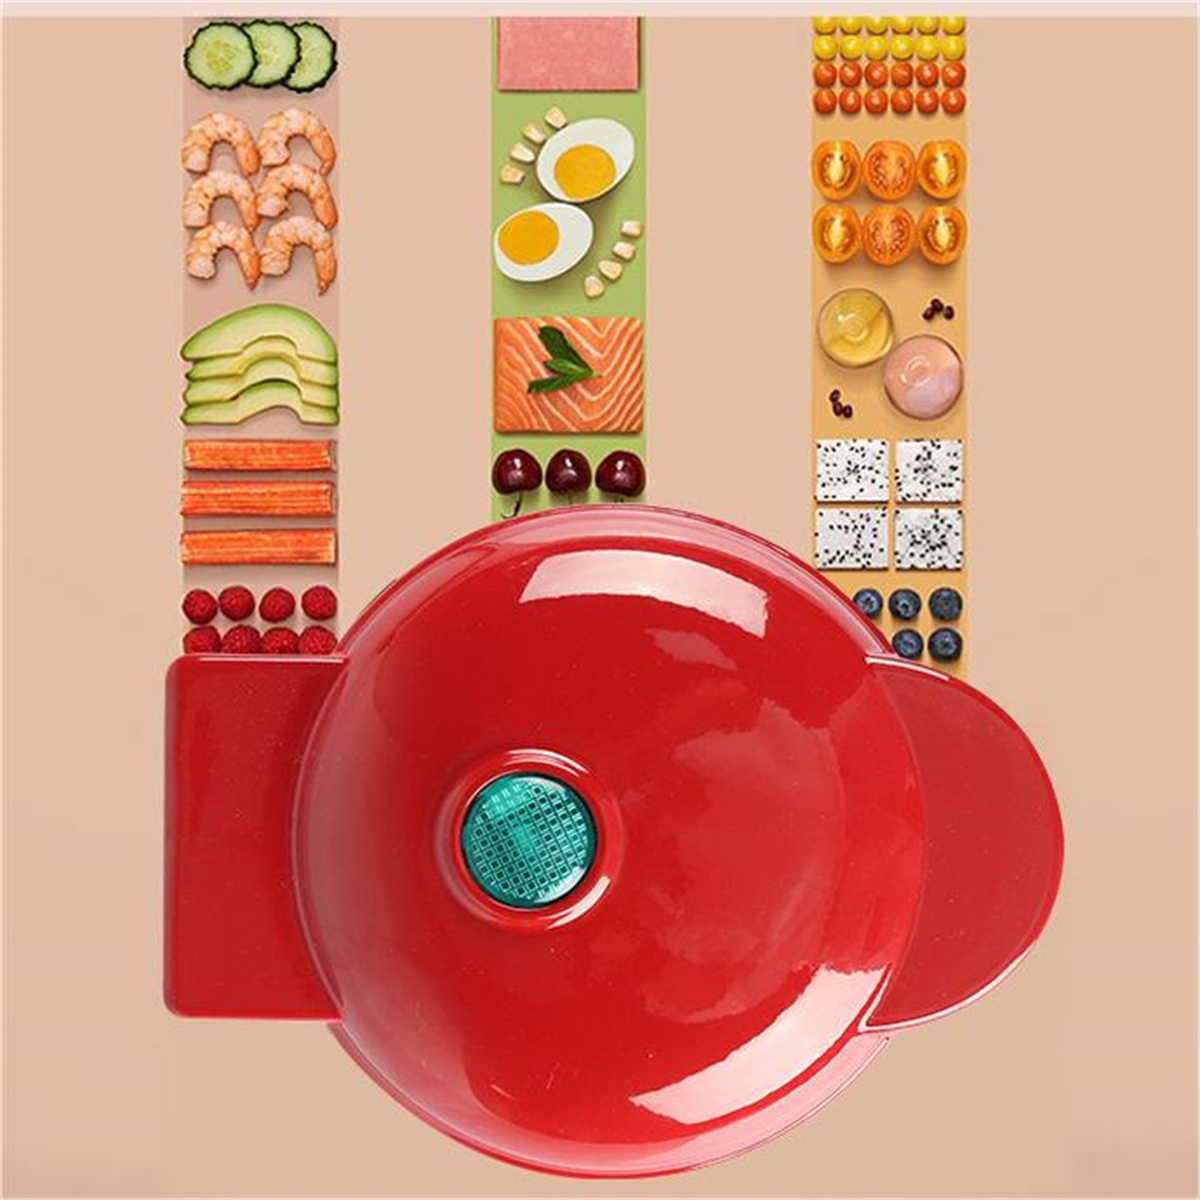 SYNTEK Zuhause Waffeleisen Multifunktional Rot Keksdose Waffeleisen Frühstücksmaschine Elektrisch Mini für Waffelmaschine